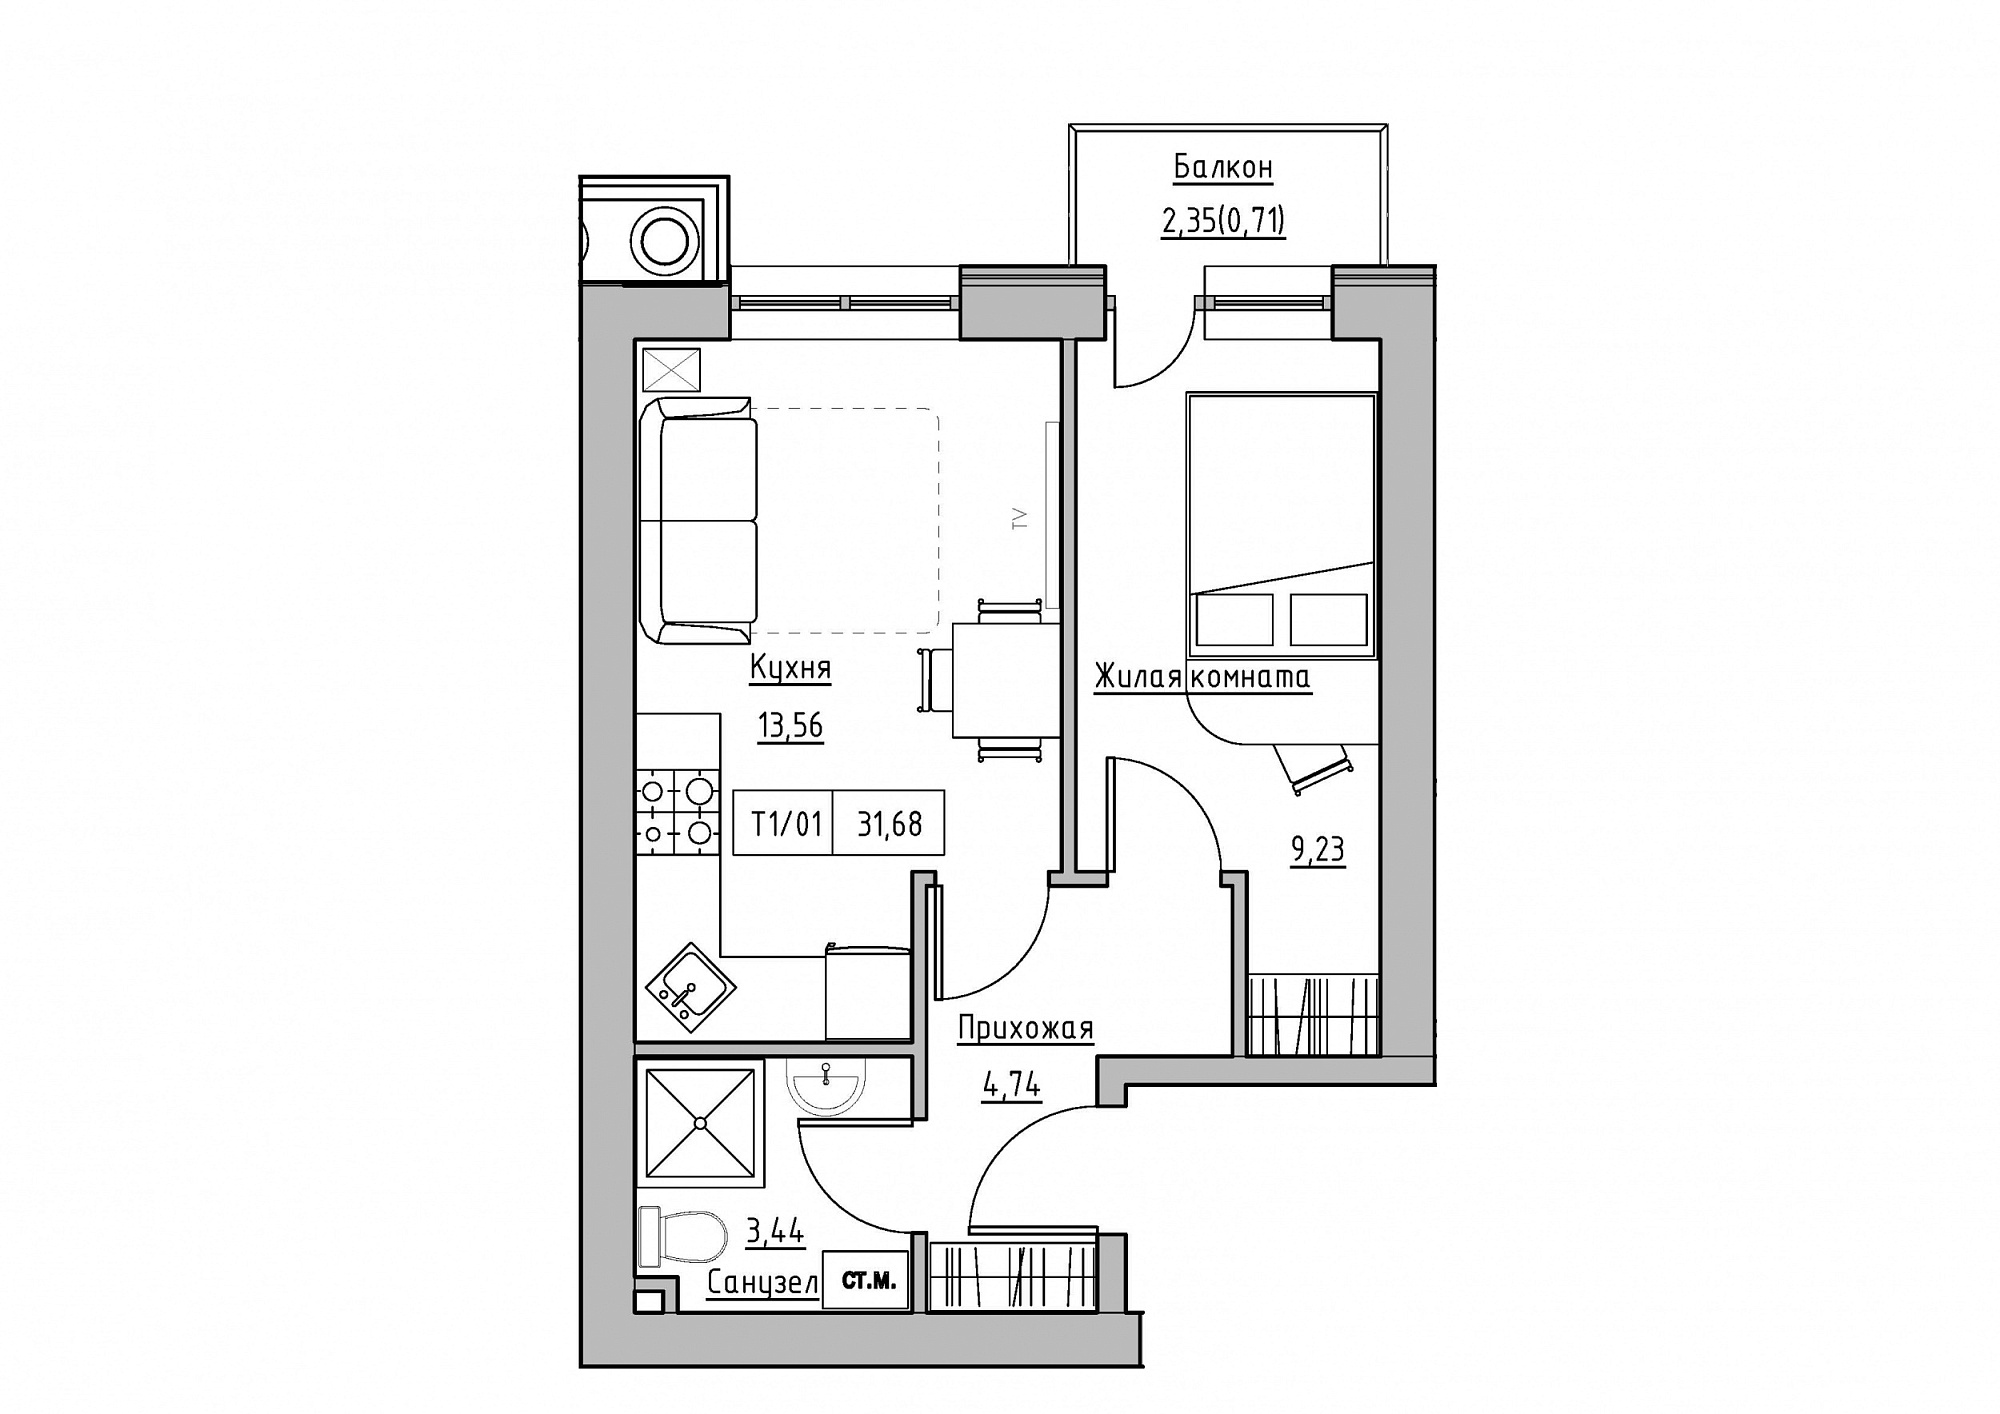 Планування 1-к квартира площею 31.68м2, KS-011-02/0013.